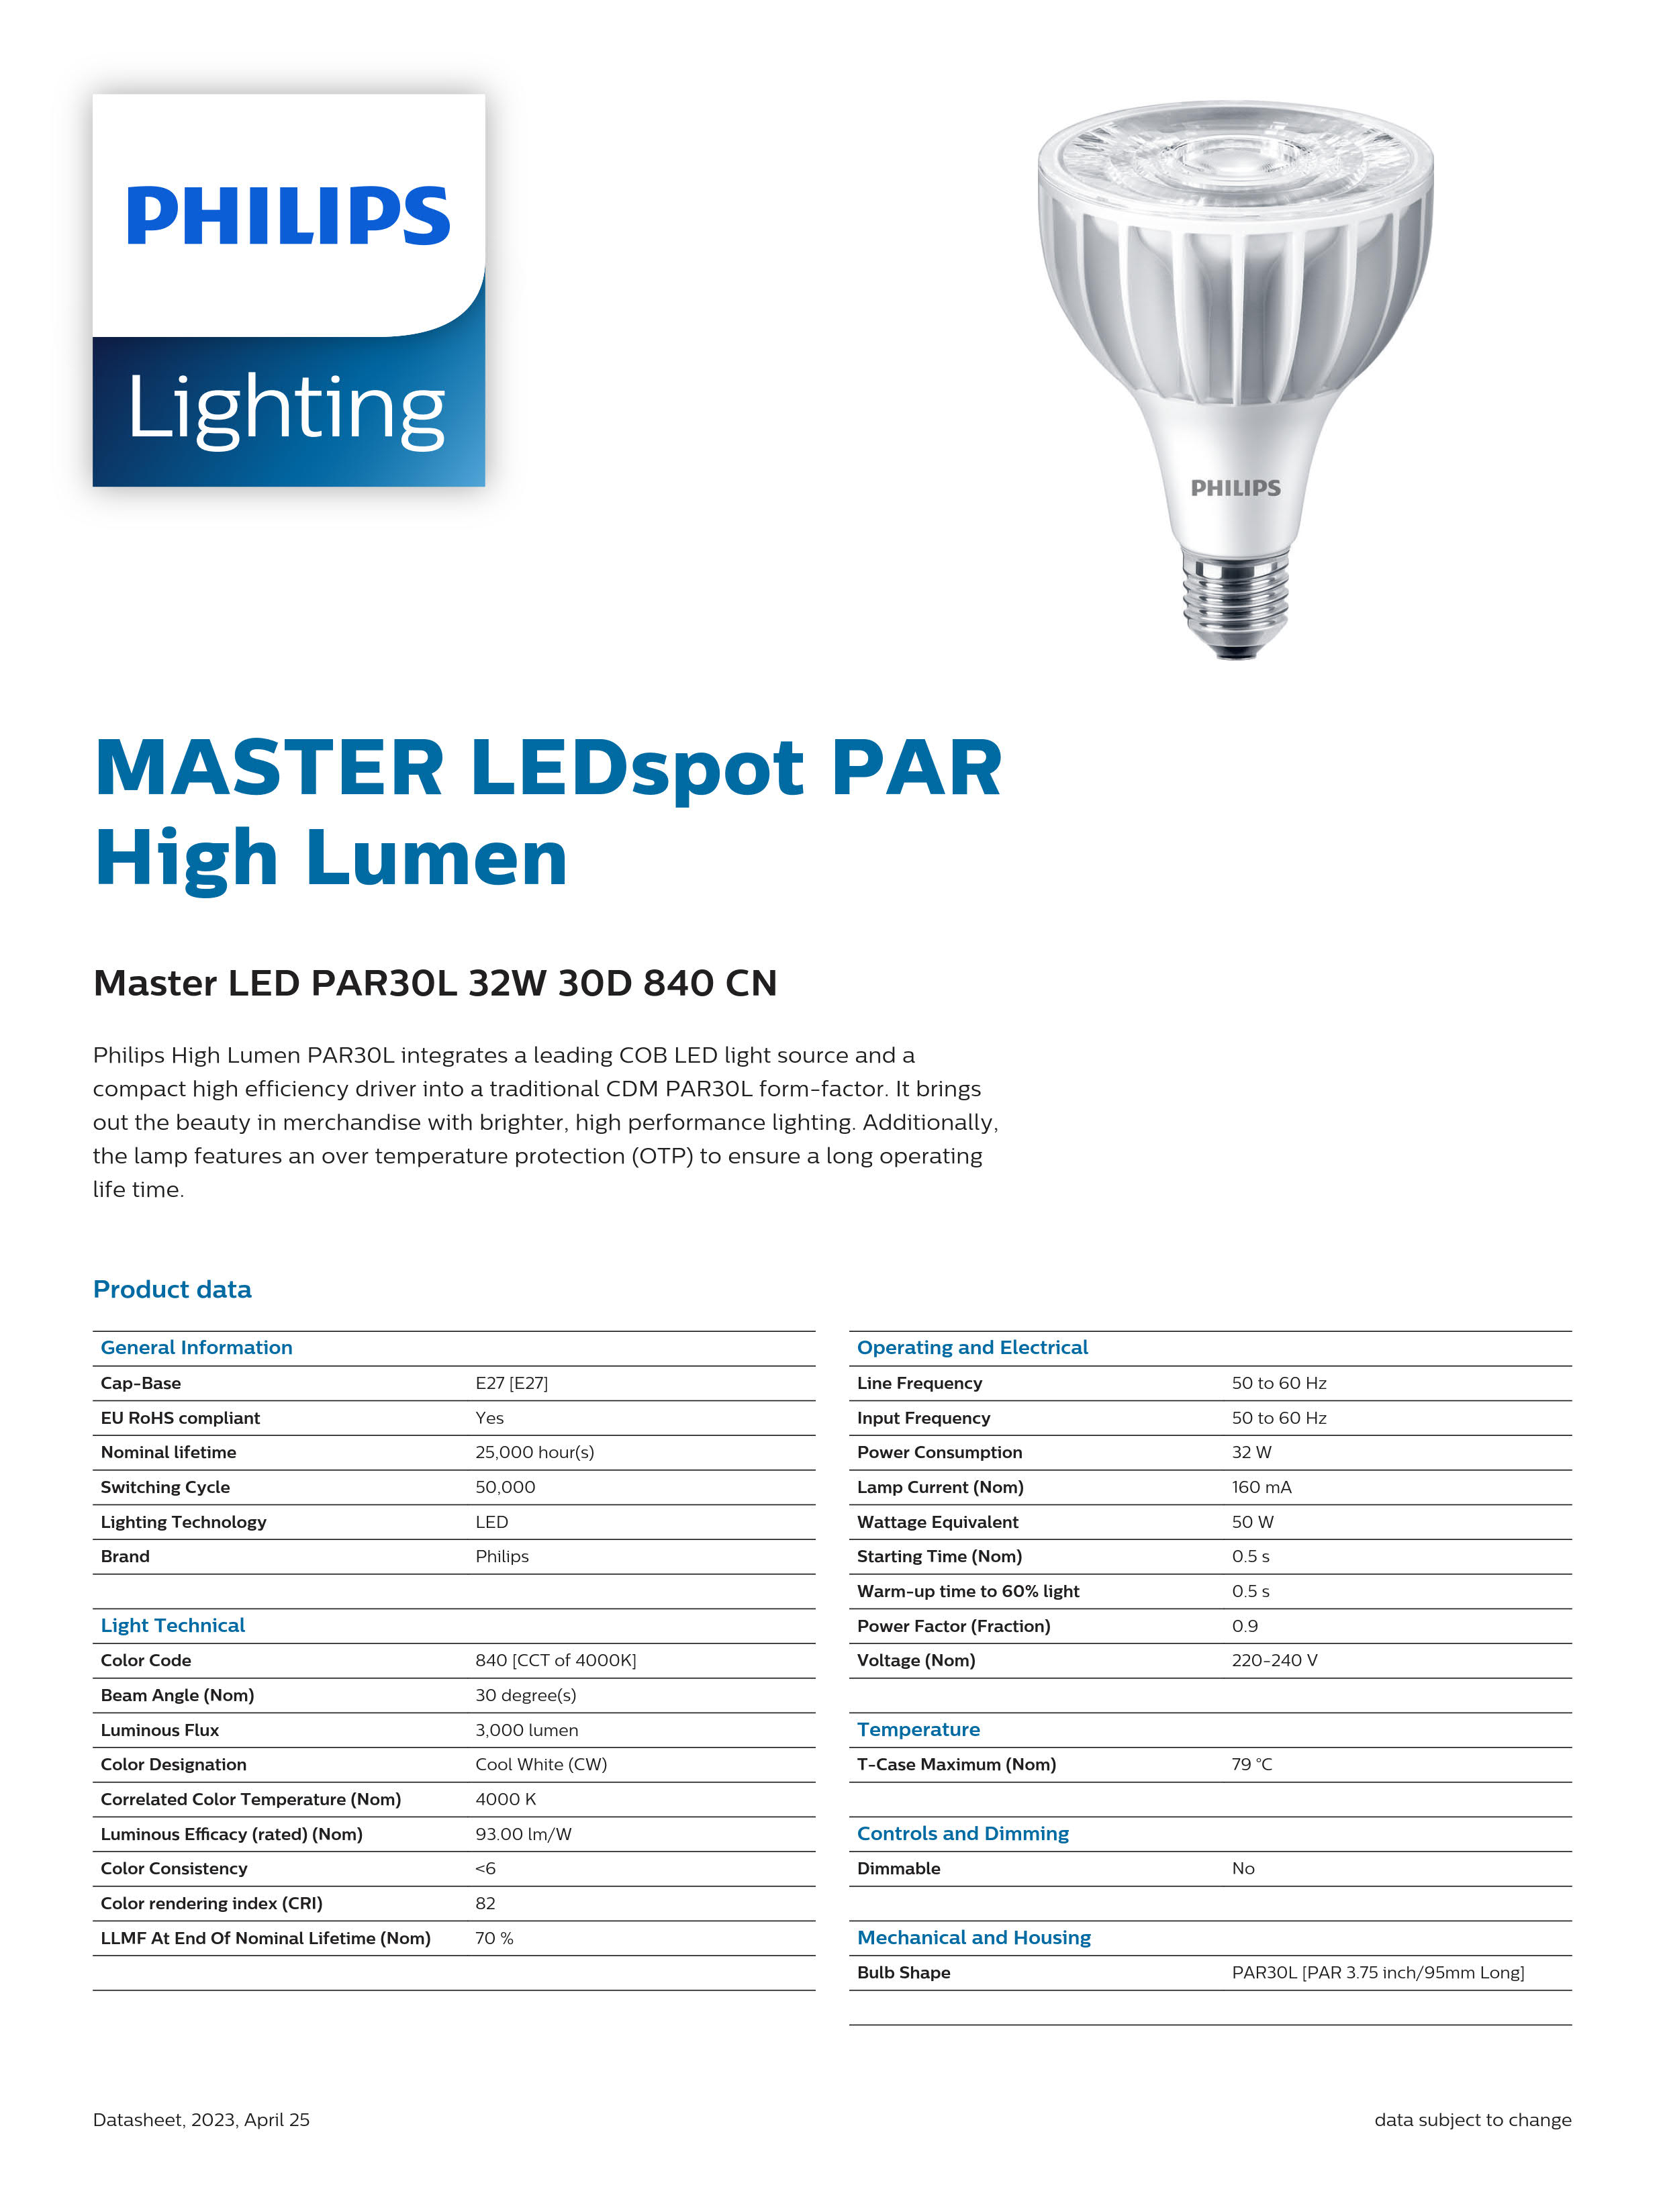 PHILIPS Master LED PAR30L 32W 30D 840 CN 929001354810